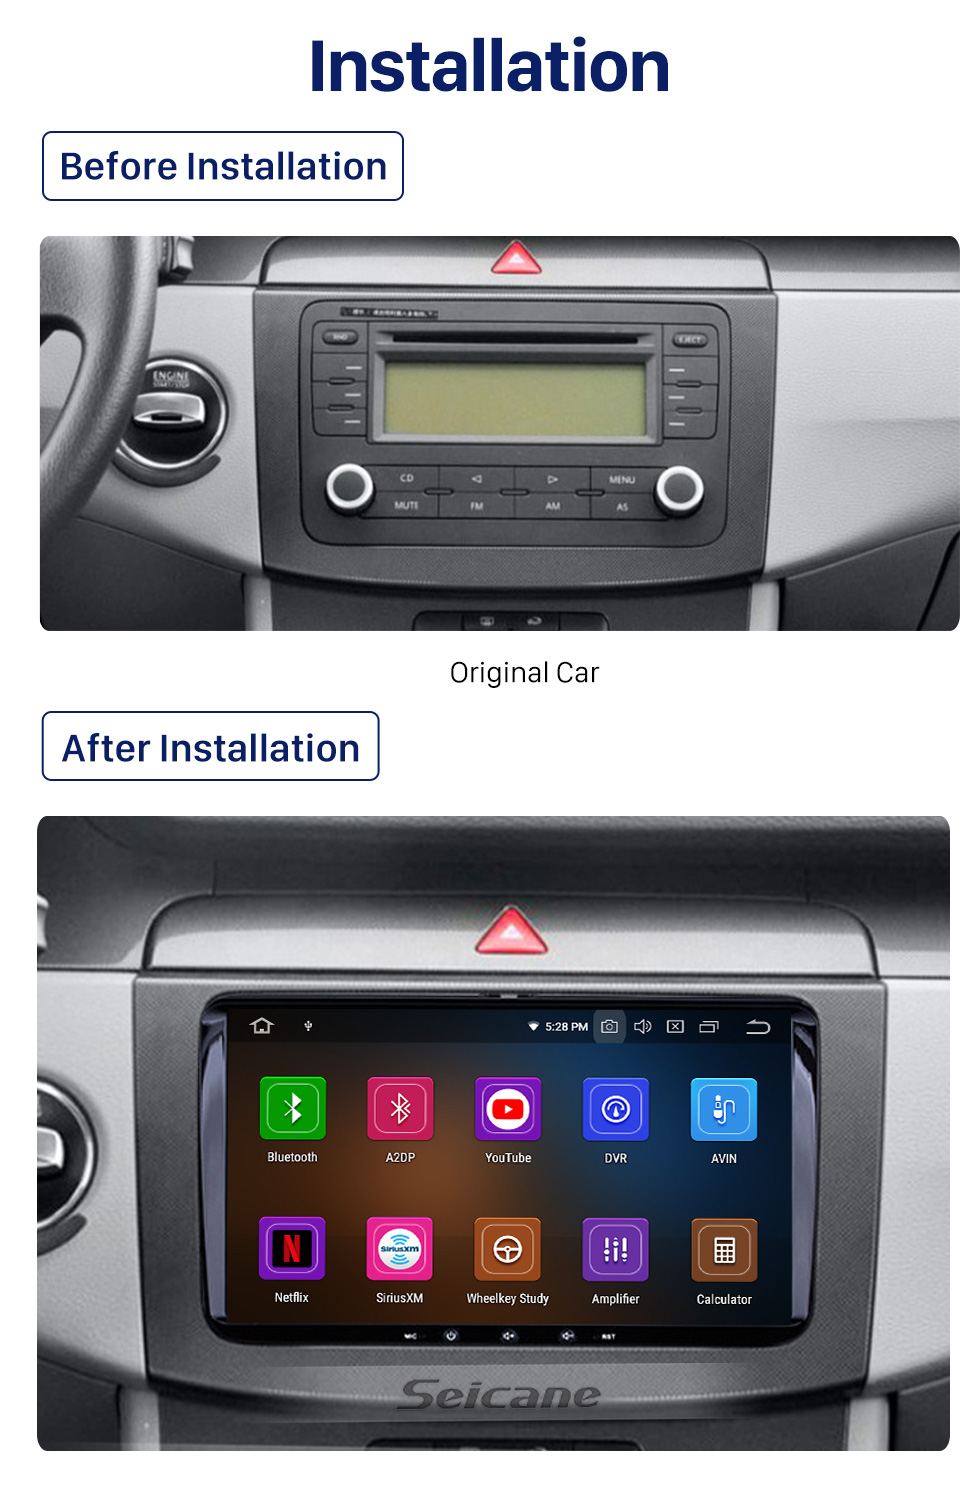 Seicane 2010 2011 Seat Alhambra Android 10.0 Navegación GPS Coche Reproductor de DVD con 3G WiFi Mirror Link Cámara de respaldo OBD2 DVR HD Pantalla táctil Control del volante Bluetooth